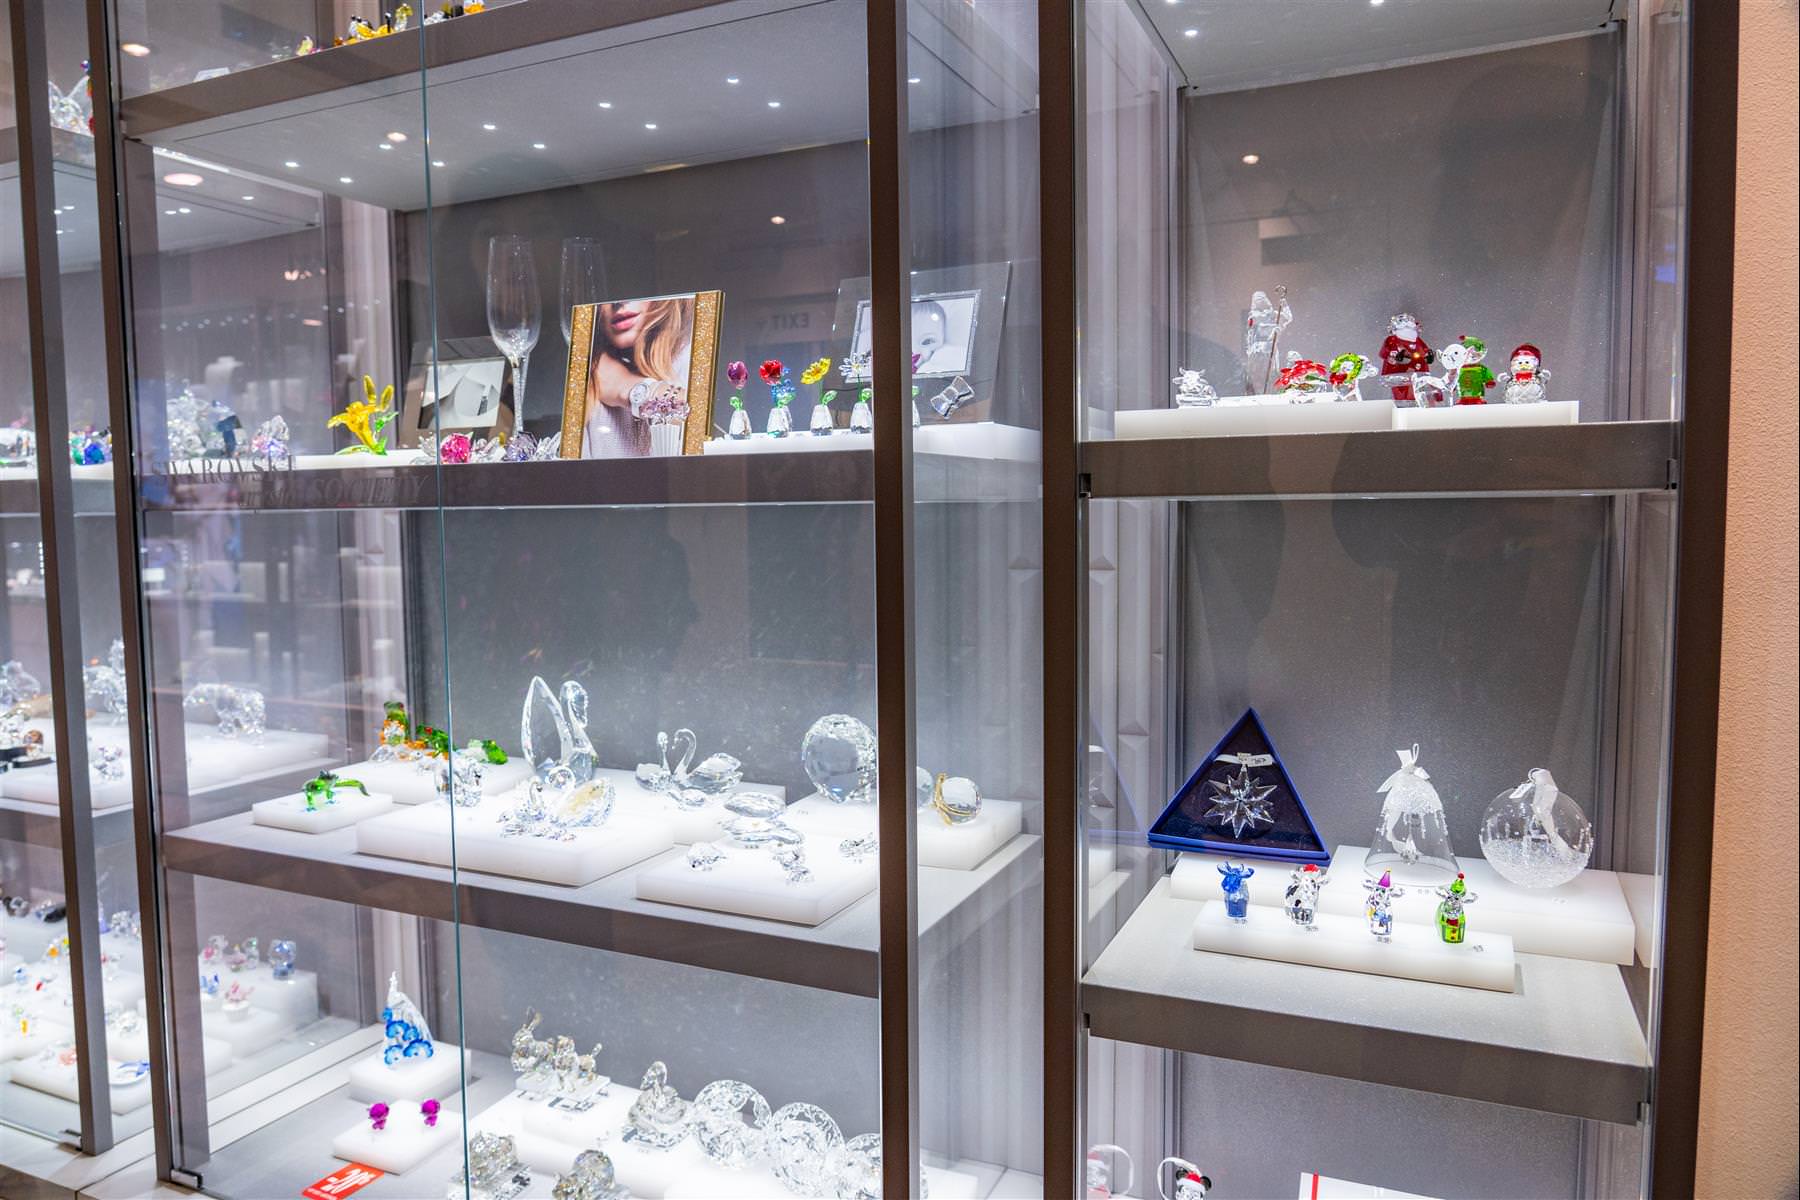 [荷蘭/阿姆斯特丹] 鑽石博物館 Diamant Museum Amsterdam，多樣的鑽石介紹與展示